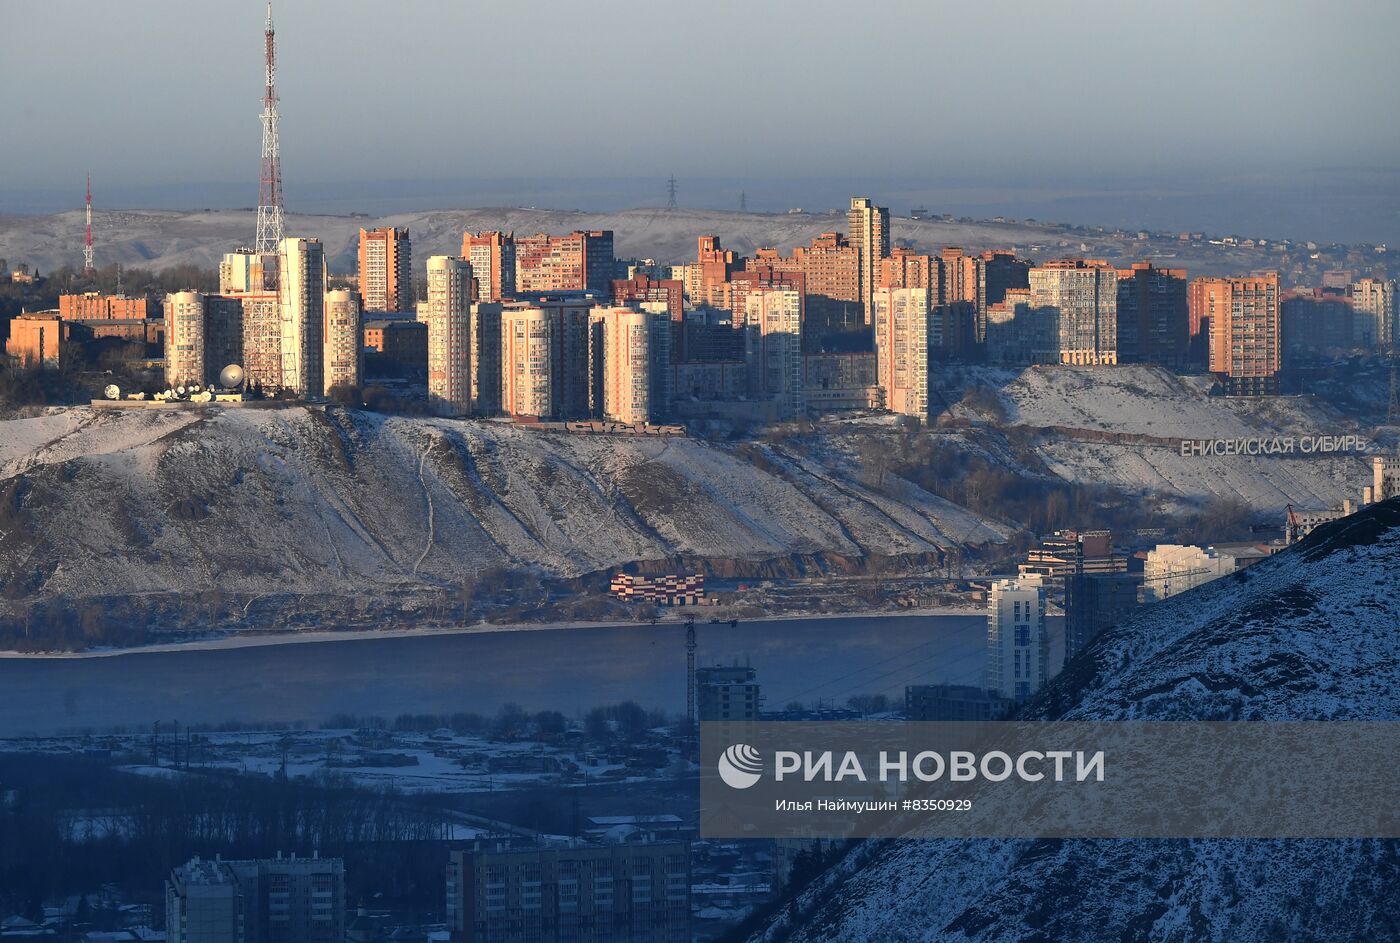 Зимний отдых в Красноярском крае 